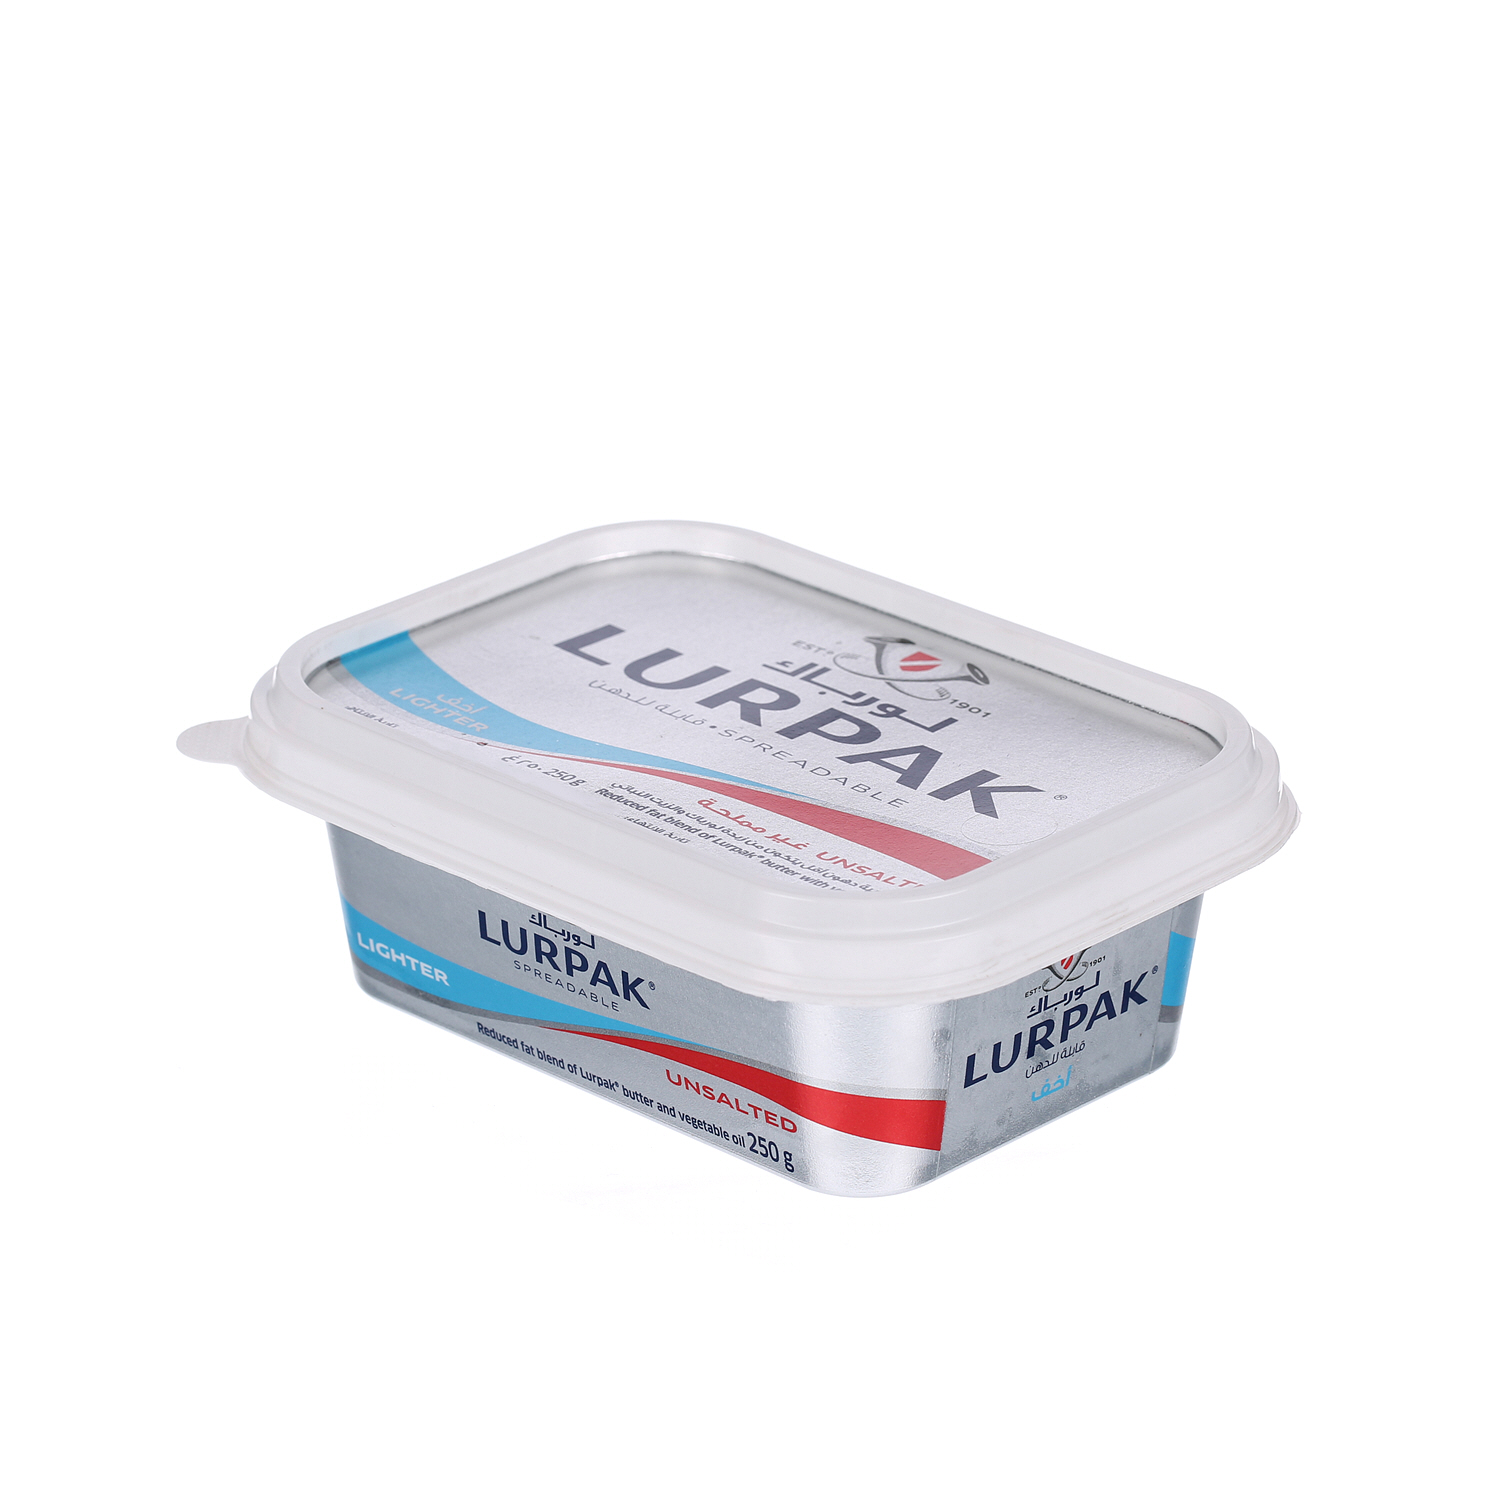 Lurpak Butter Spreadable Light Unsalted 250 g